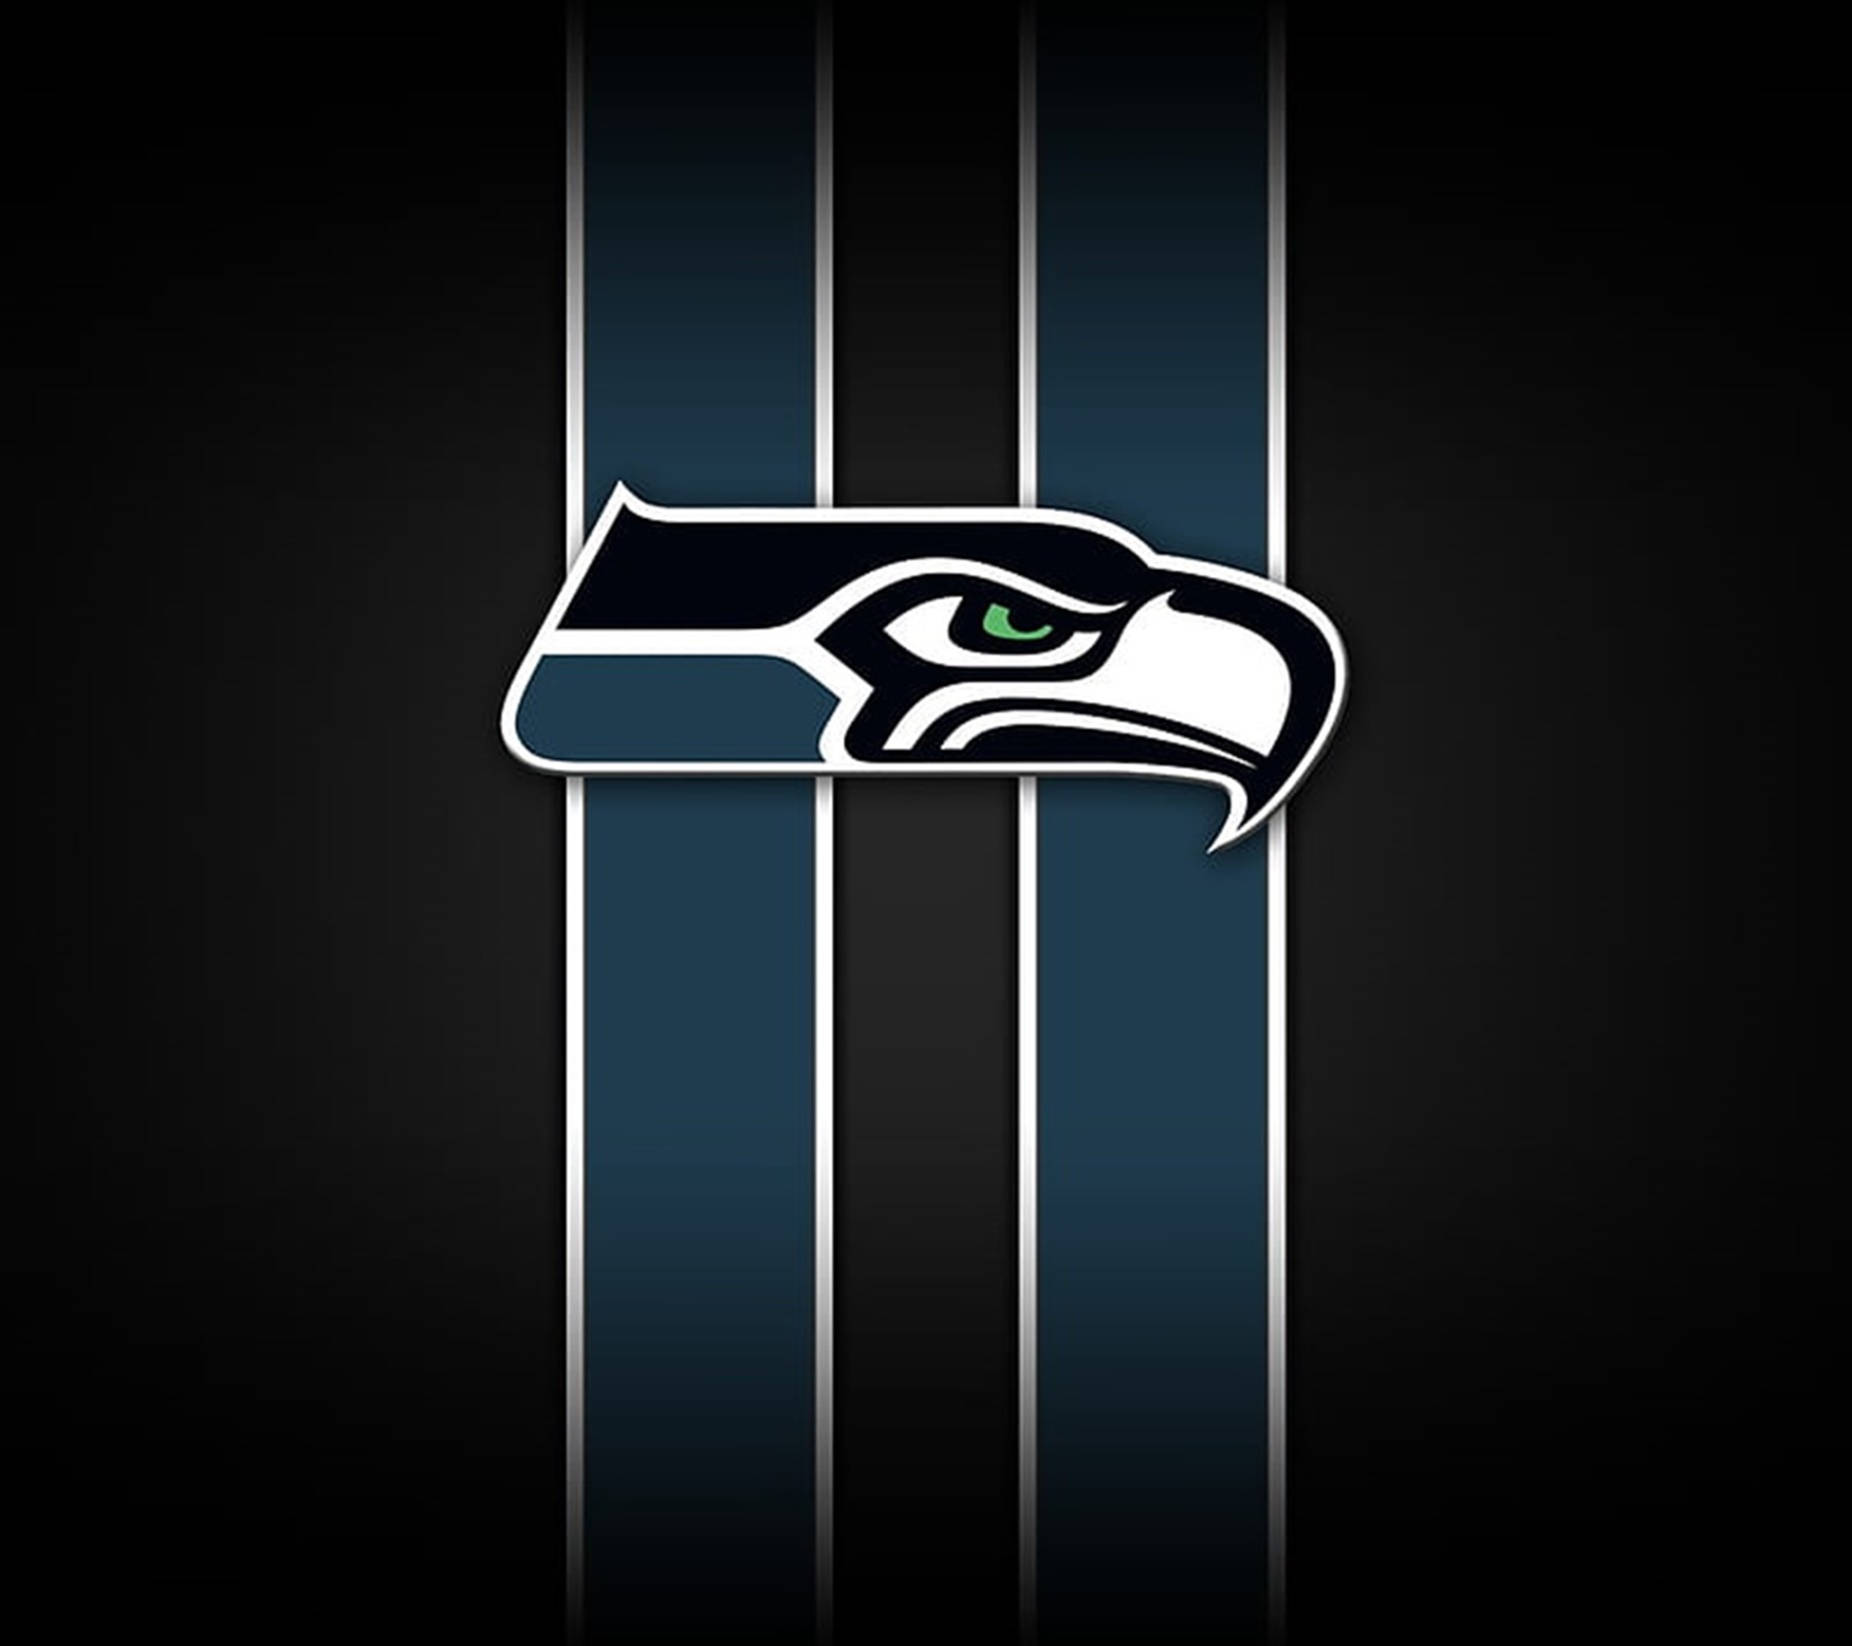 Schwarzesästhetisches Seahawks-logo Wallpaper